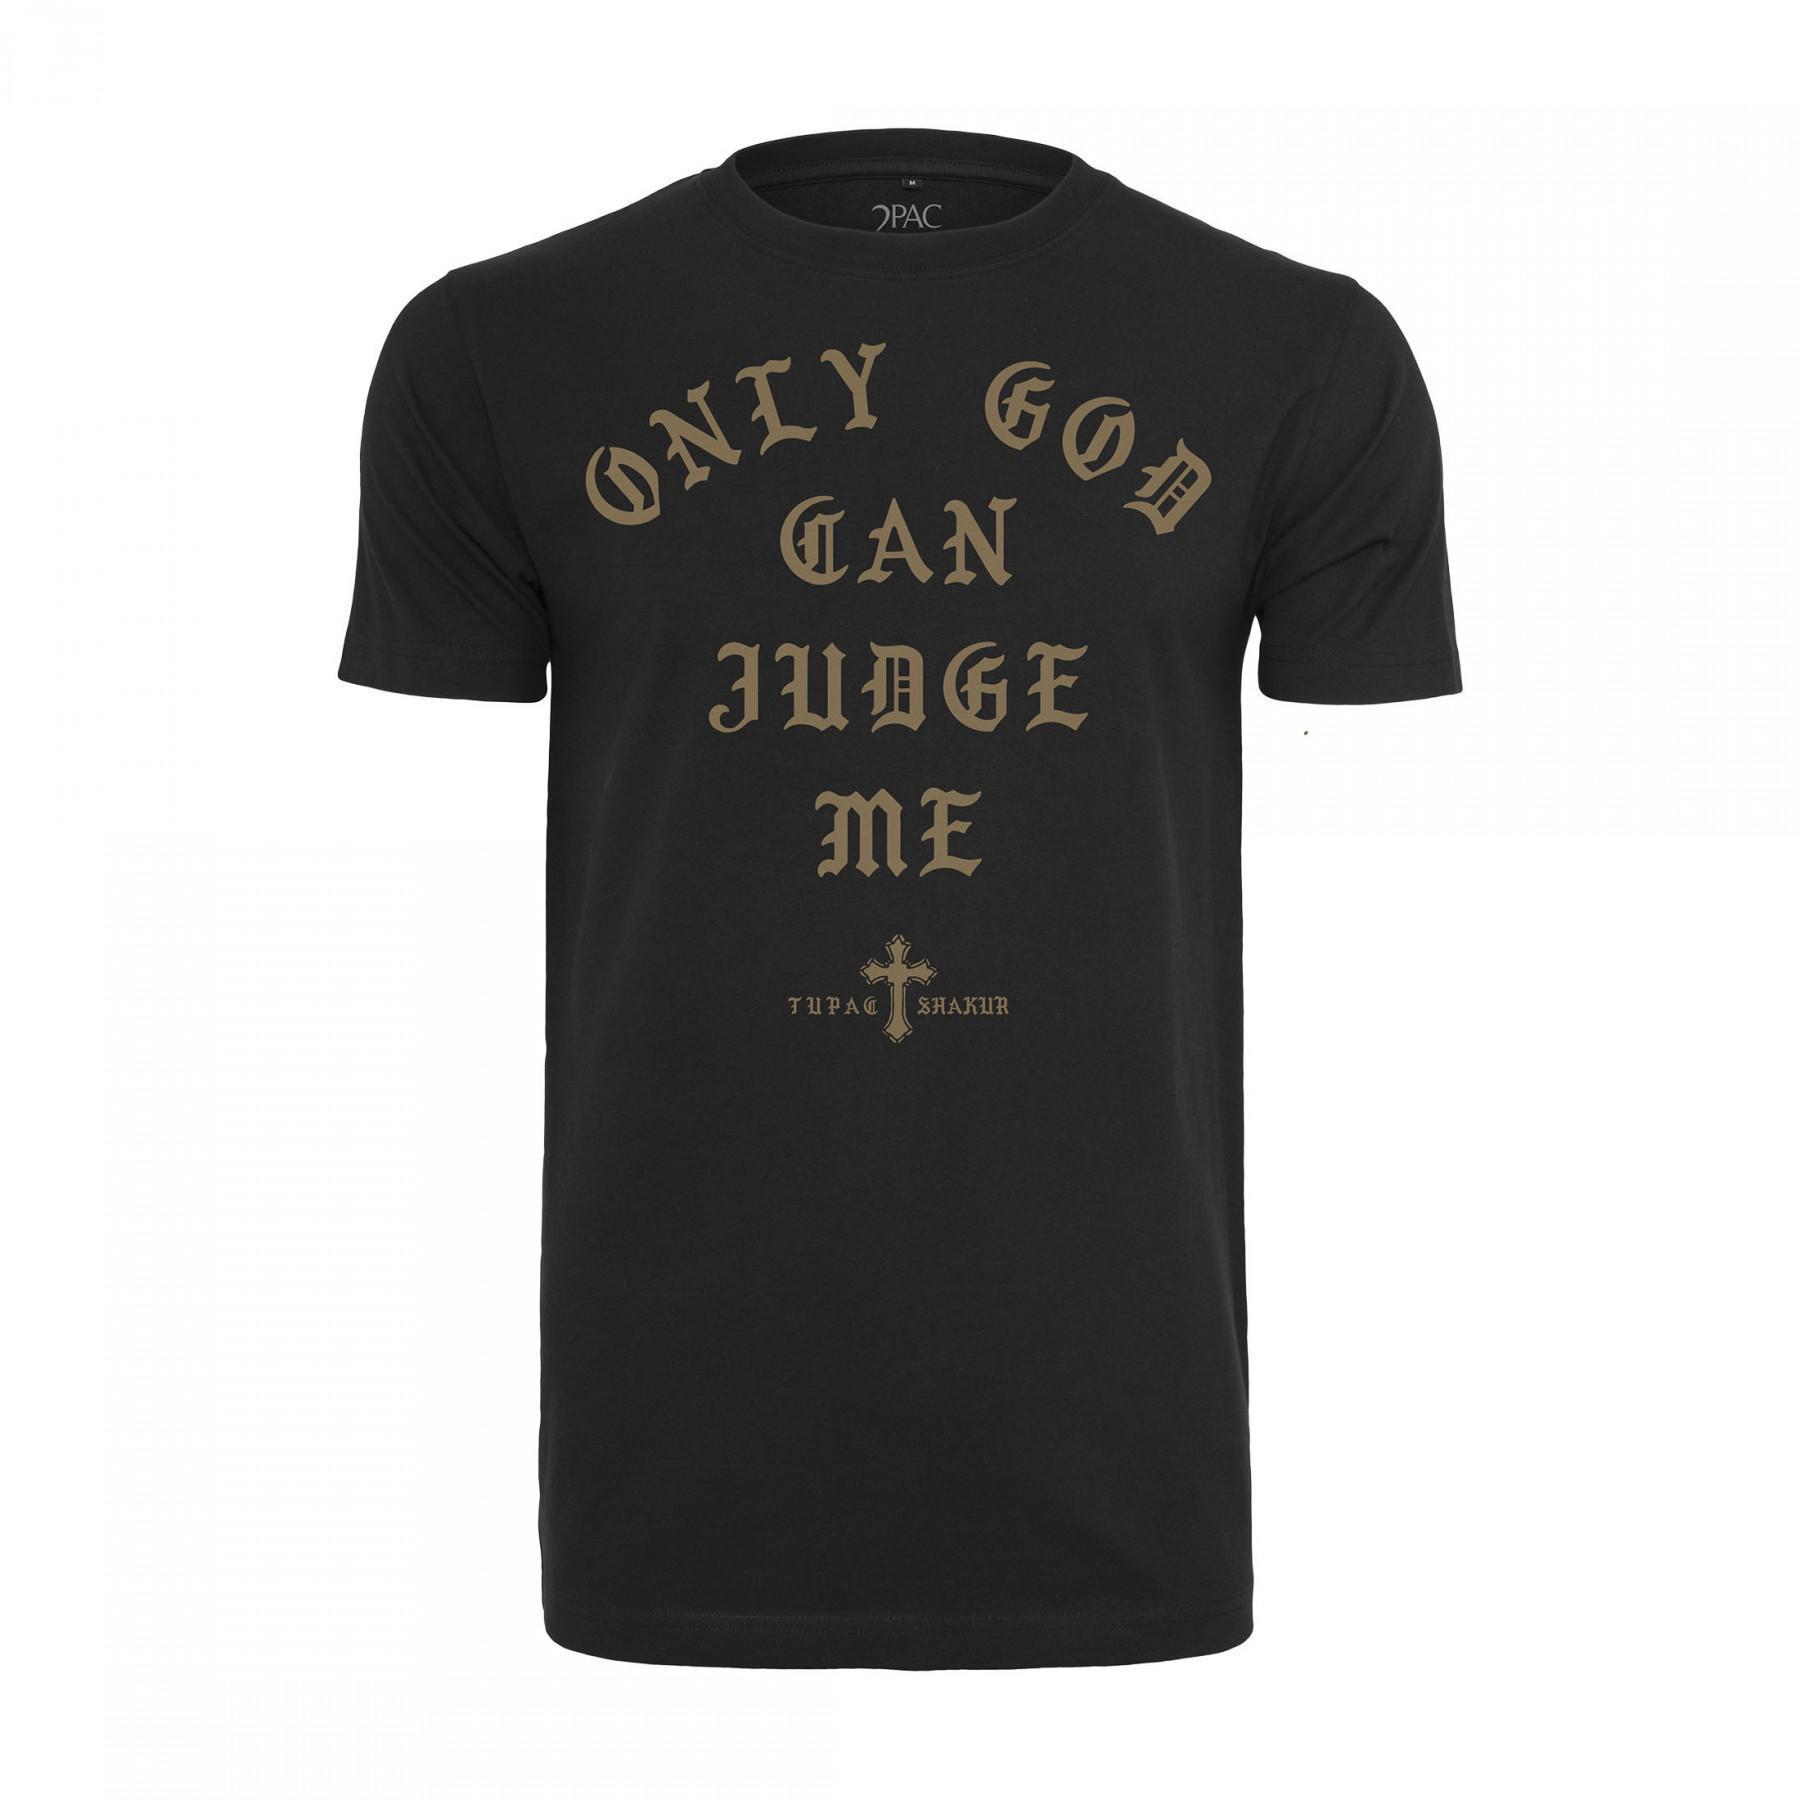 T-shirt Mister Tee 2pac judge